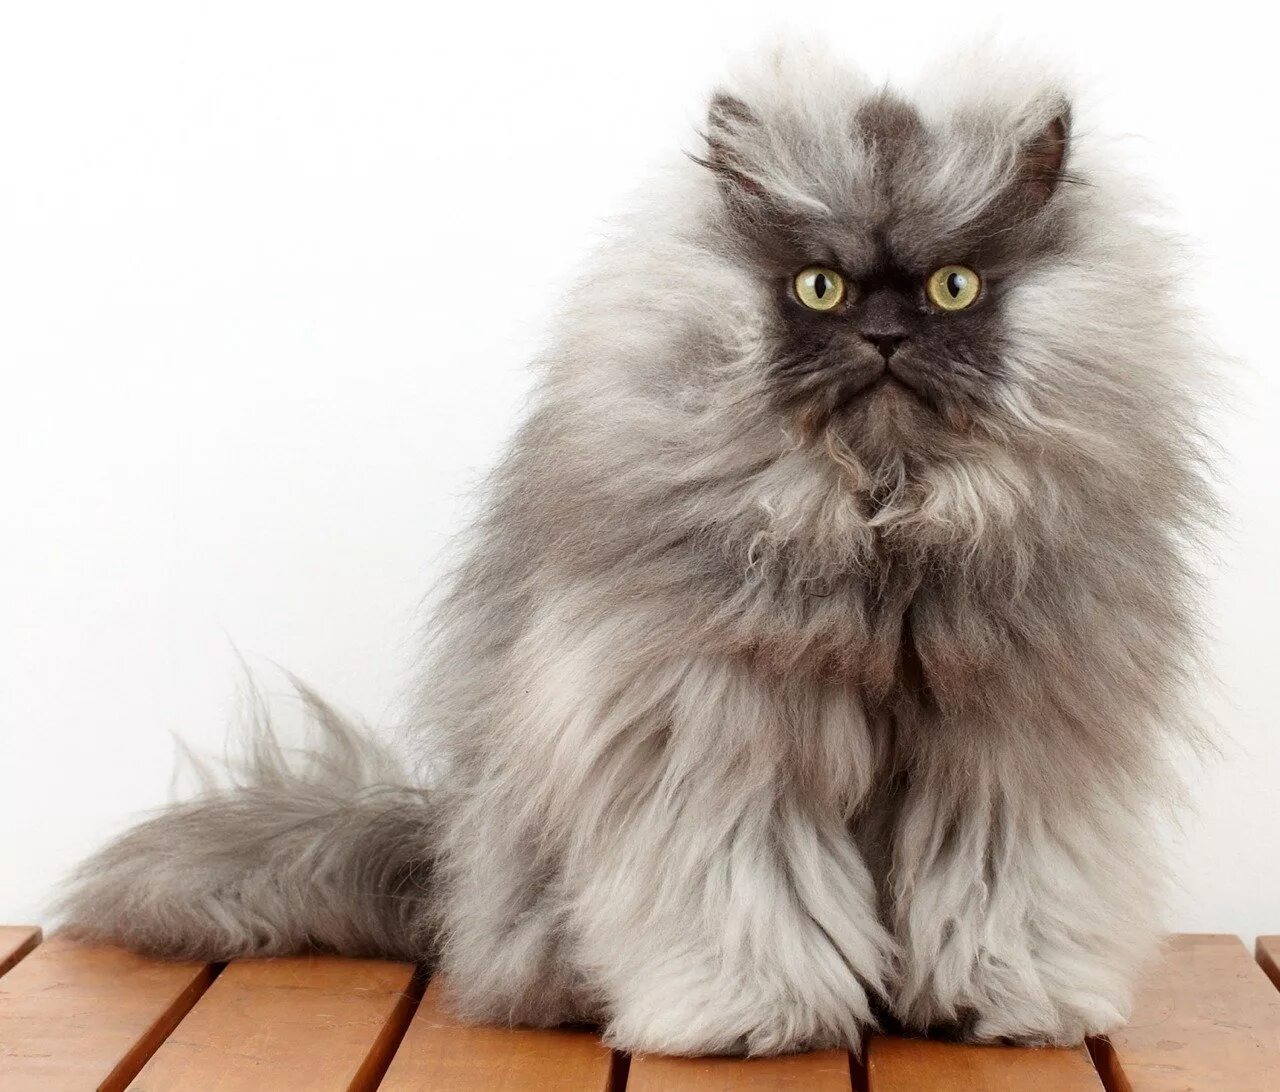 Британская длинношёрстная кошка. Гималайская кошка длинношерстная. Персидская длинношерстная кошка Джуно. Персидская длинношерстная шиншилла.